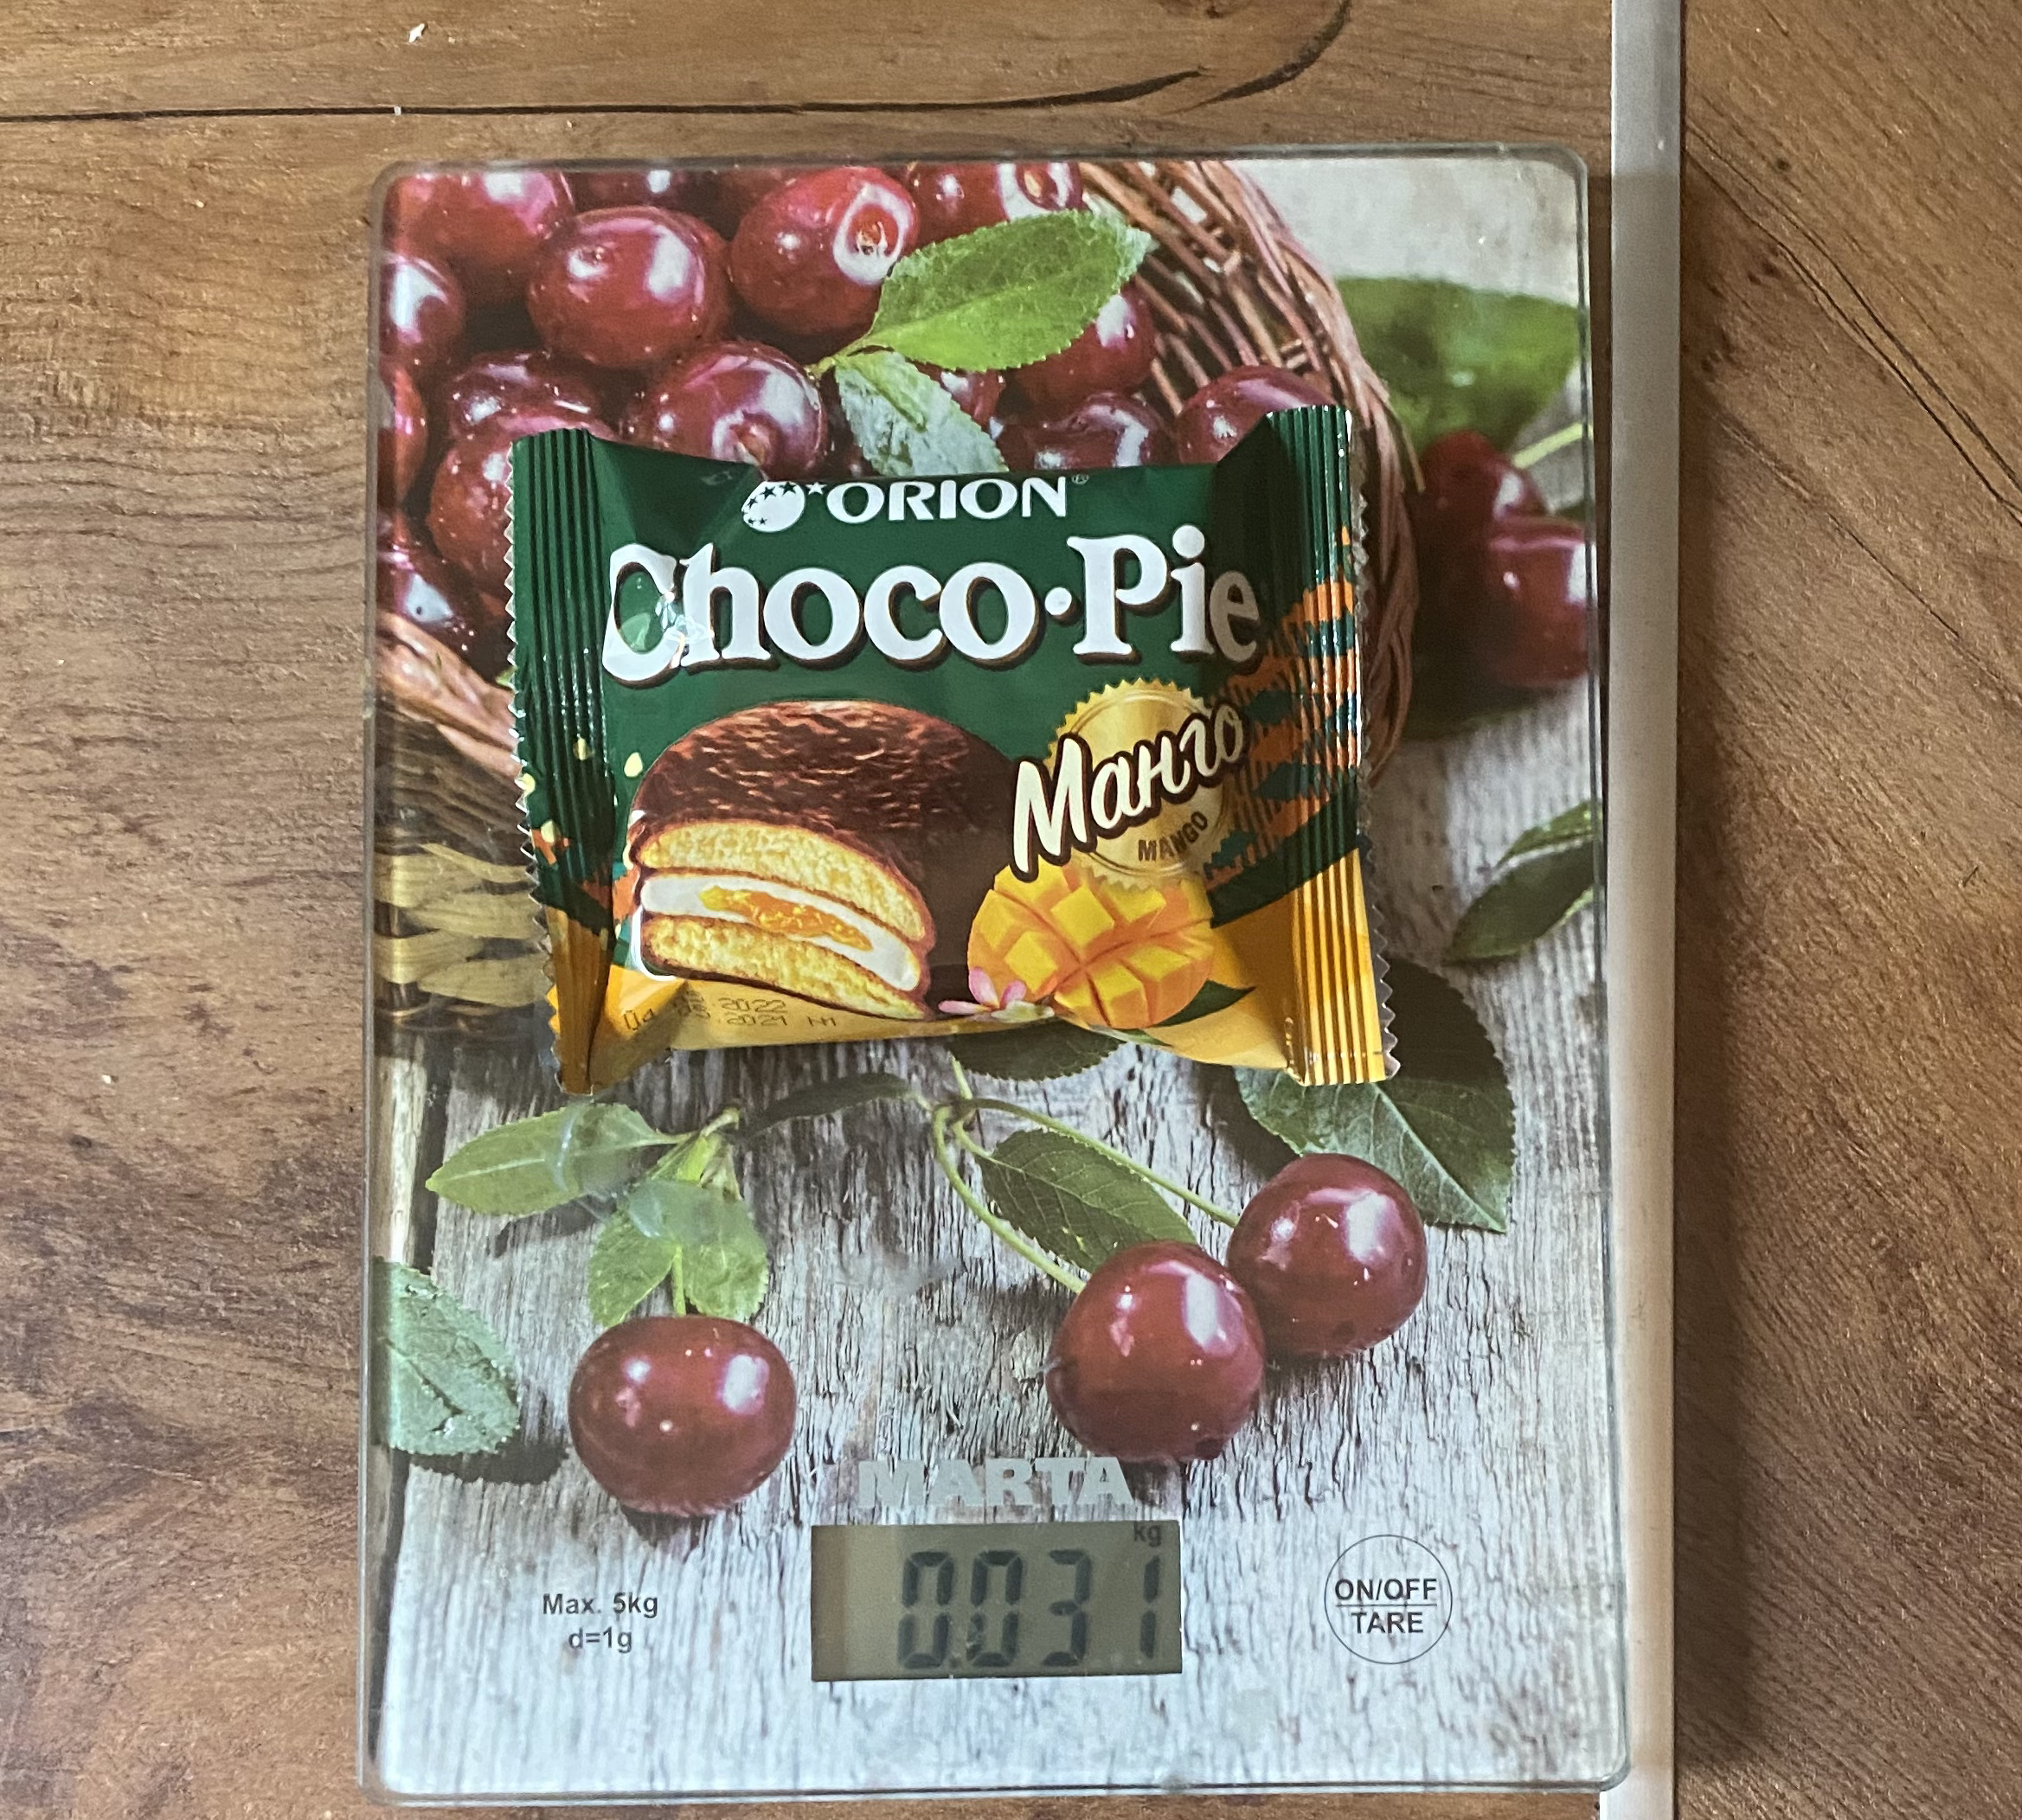 Сколько весит пирожное Чоко пай с манго 1 шт?